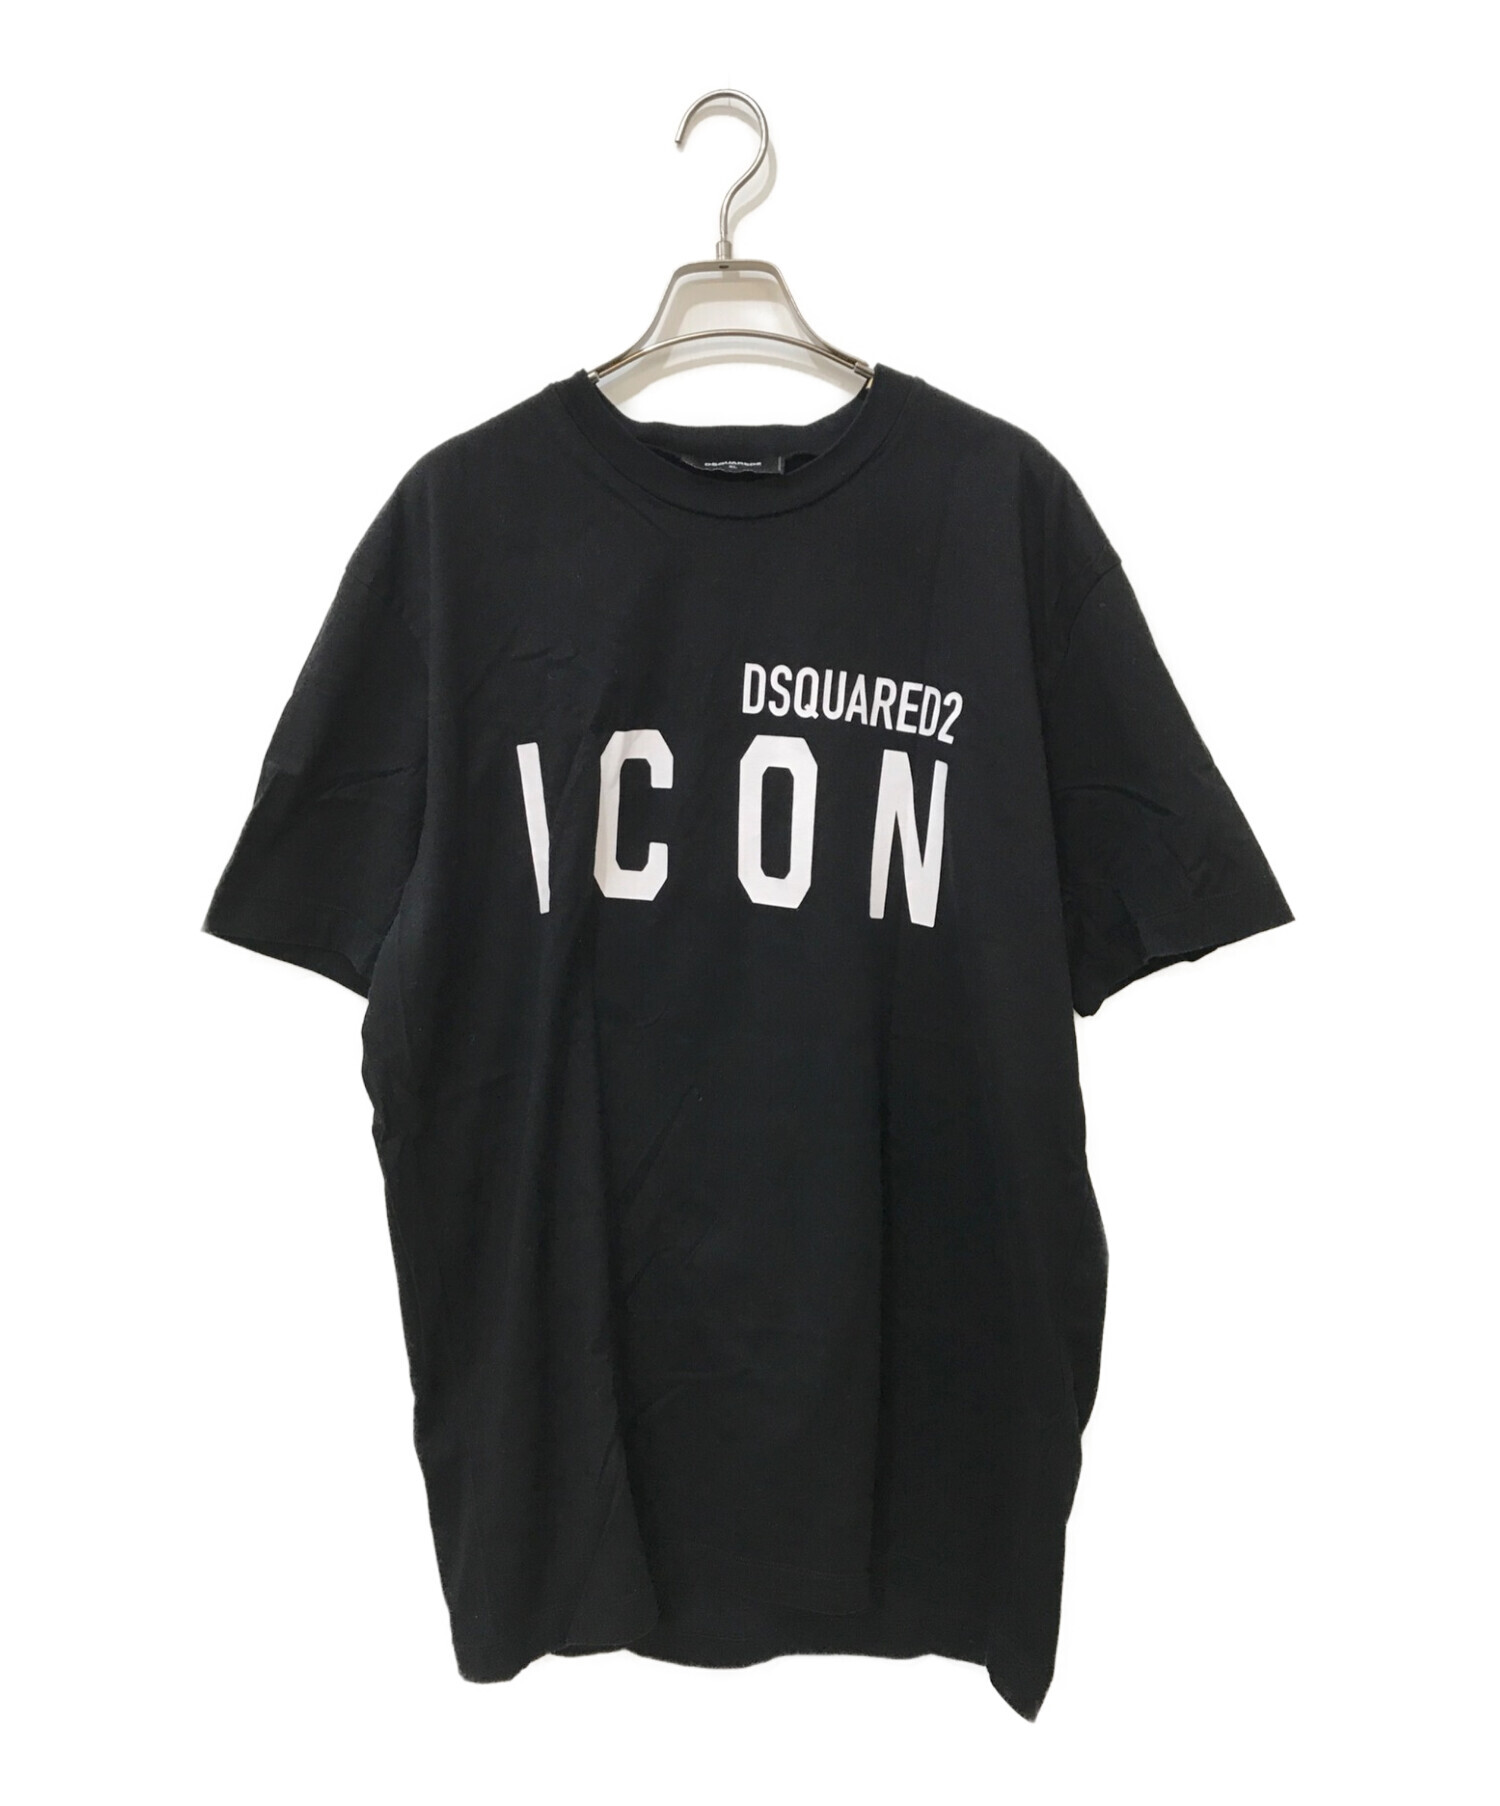 ディースクエアード 23SS ICON SUNSET COOL Tシャツ L 黒71cm袖丈